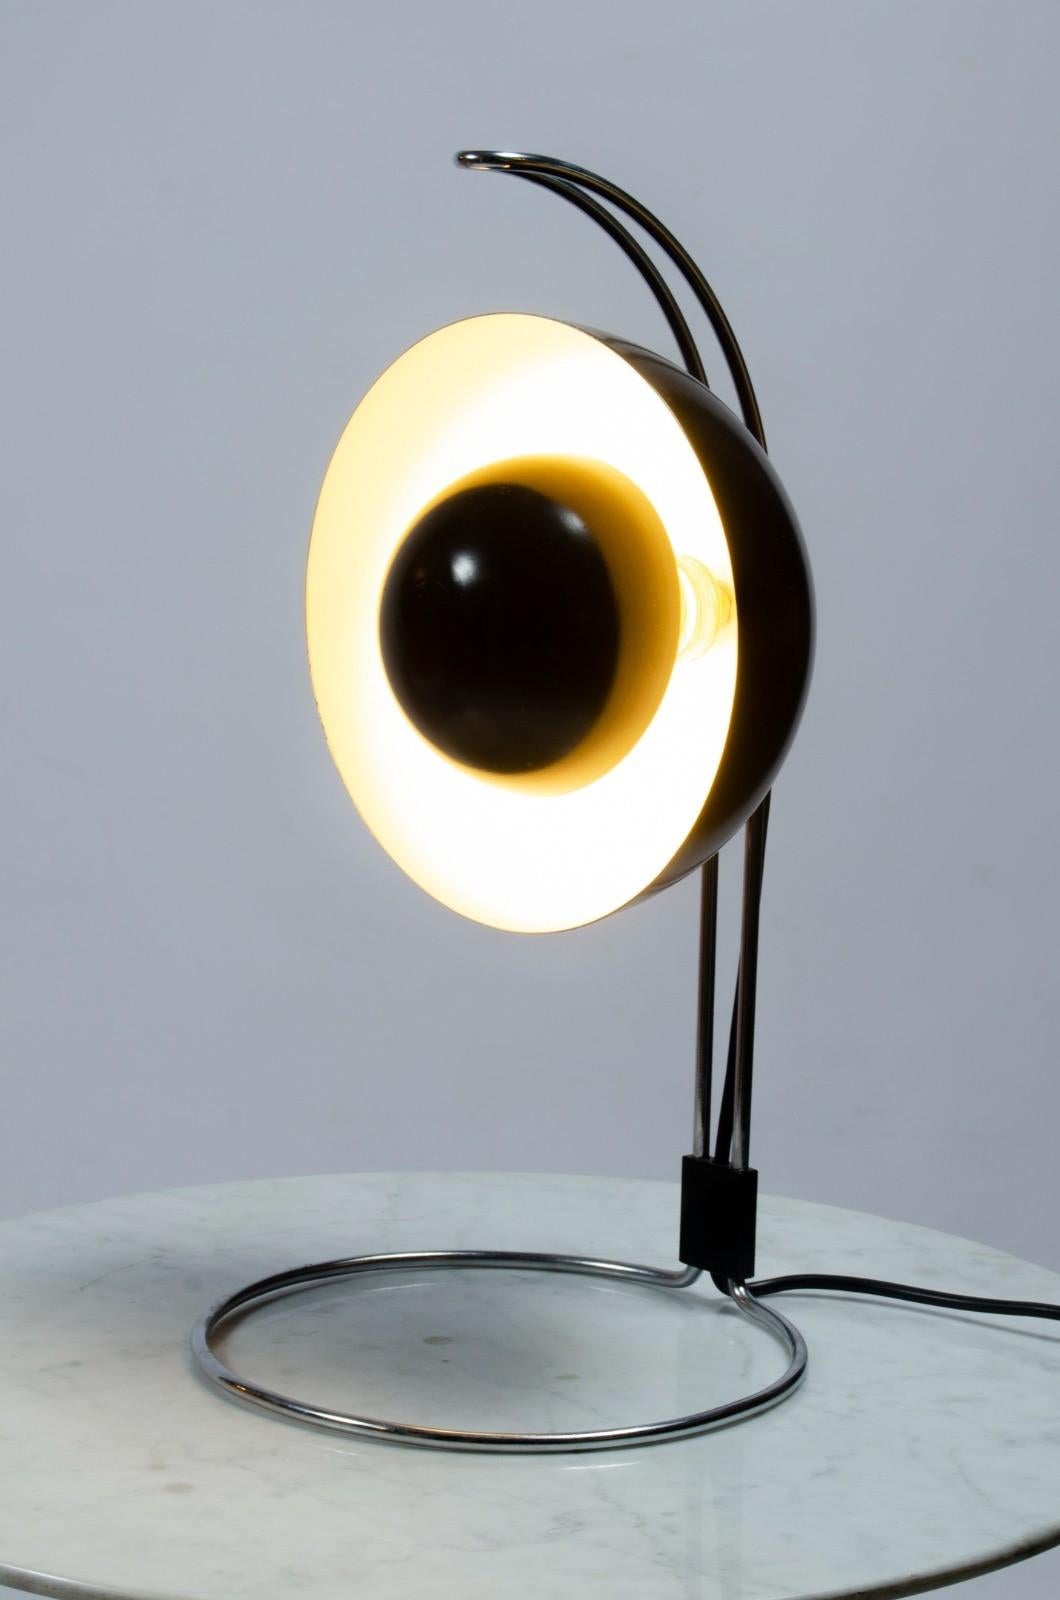 Cette lampe de table FlowerPot VP4 Style 
est la génération de l'harmonie, ce qui permet d'attirer l'attention. 
du salon ou un Luminaire d'ambiance de la table de nuit.

 La VP4 produit une lumière agréable qui permet de l'utiliser comme lampe